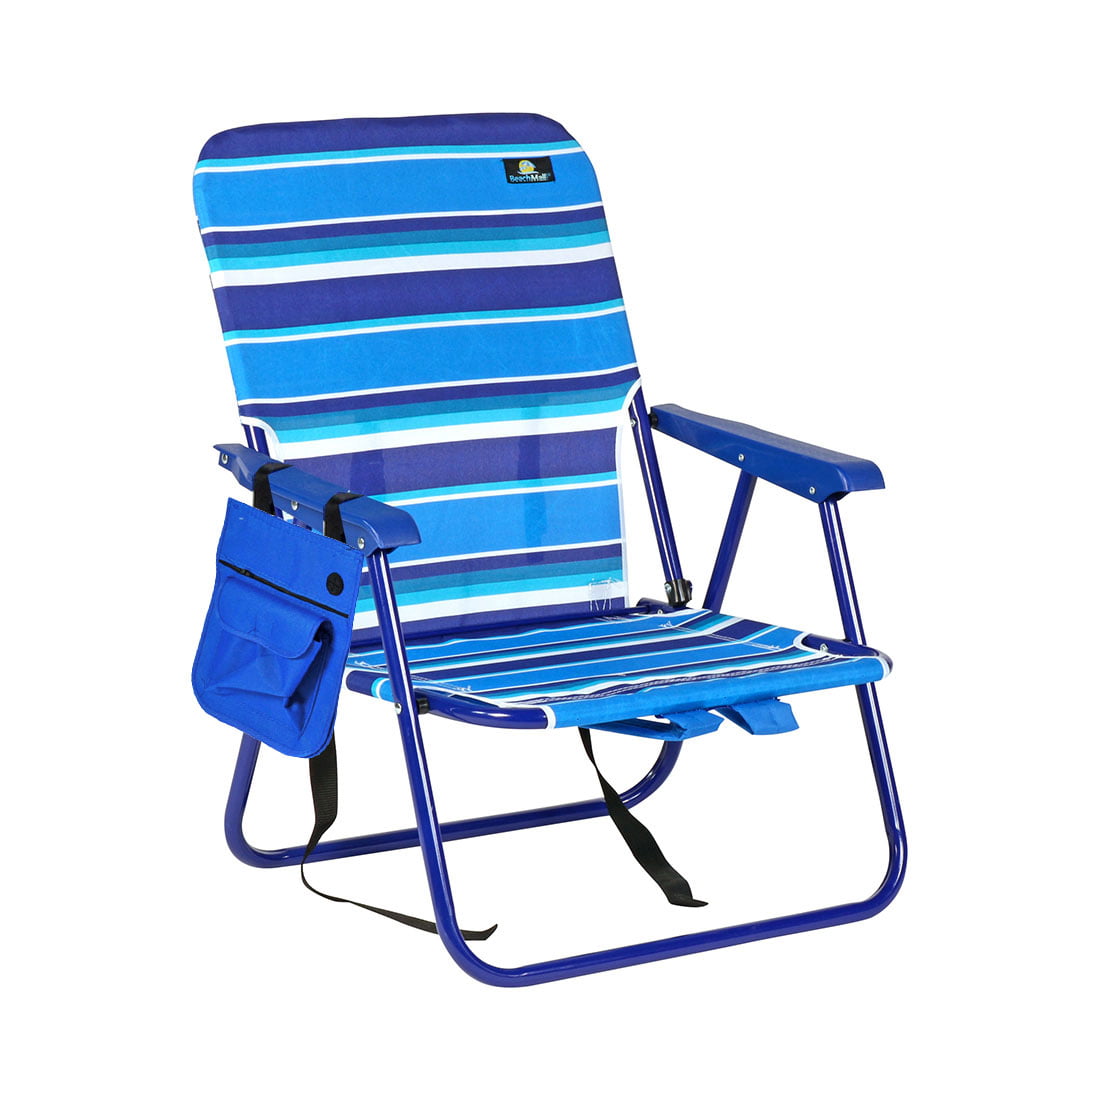  Lightweight Foldable Beach Chair 